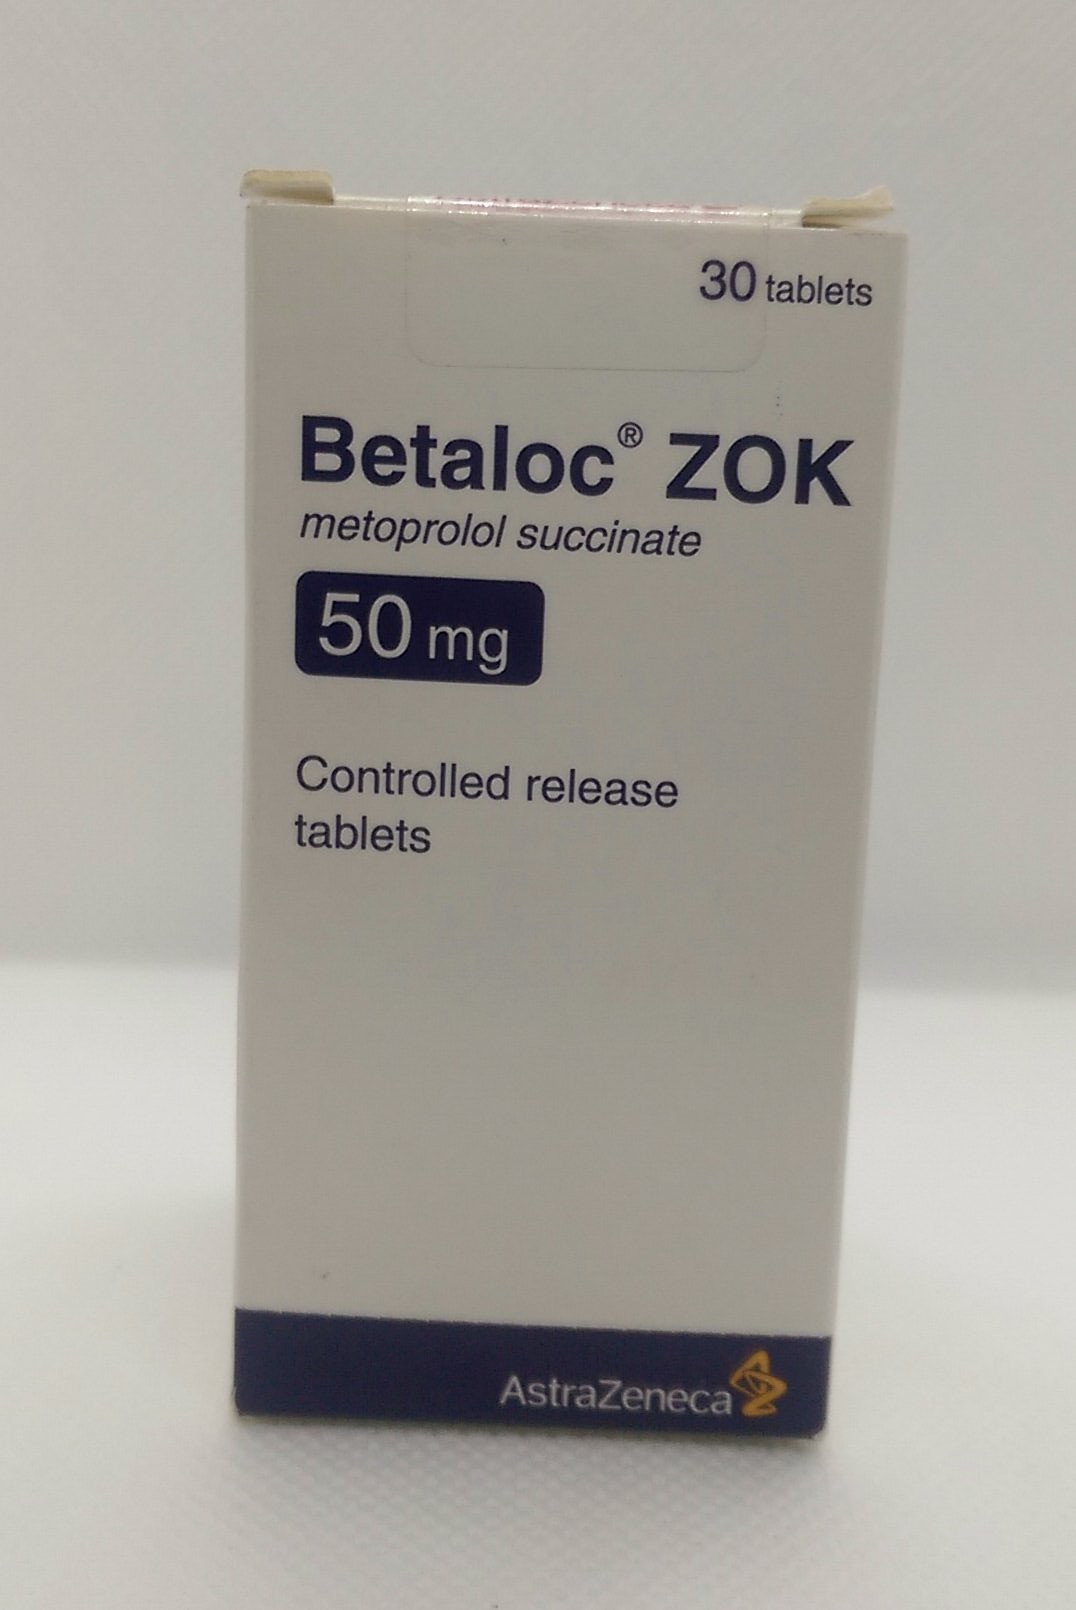 Betaloc (Metoprolol) 50mg tablets